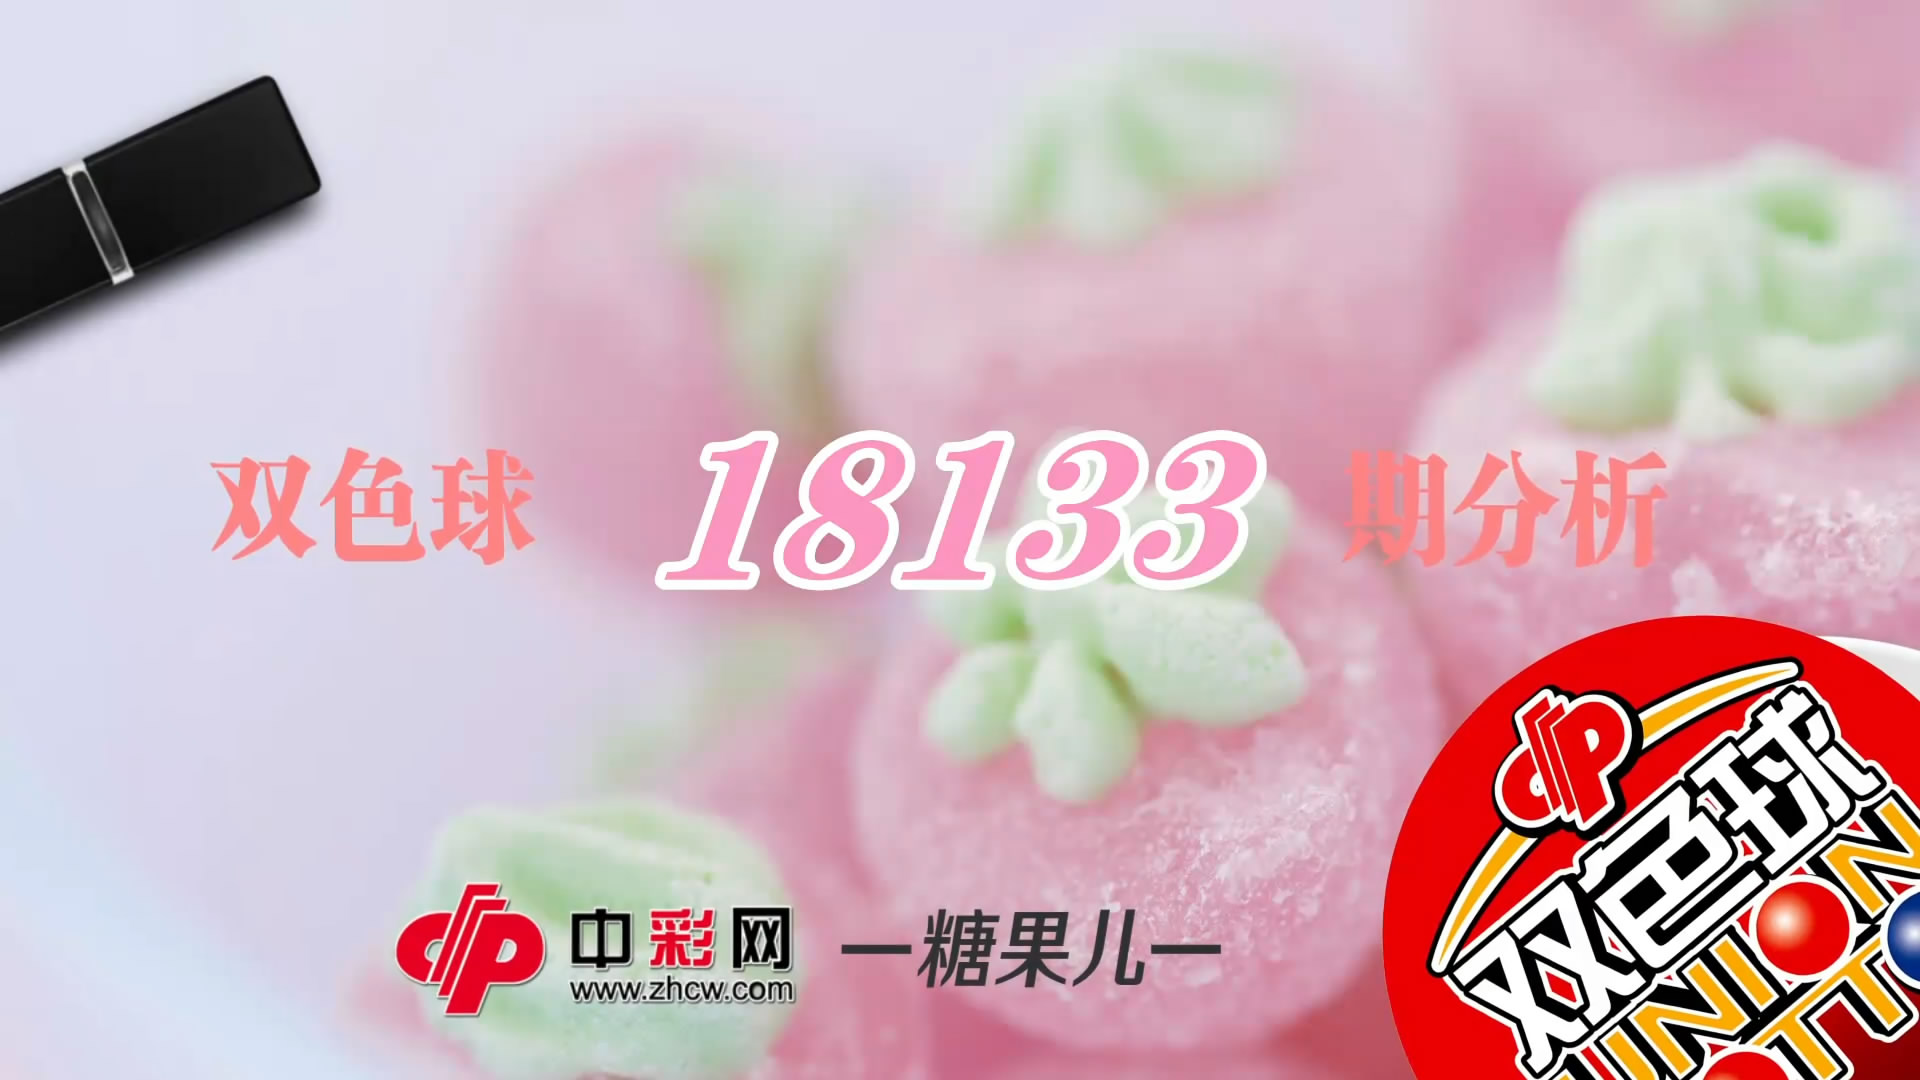 【中彩视频】糖果儿双色球第18133期